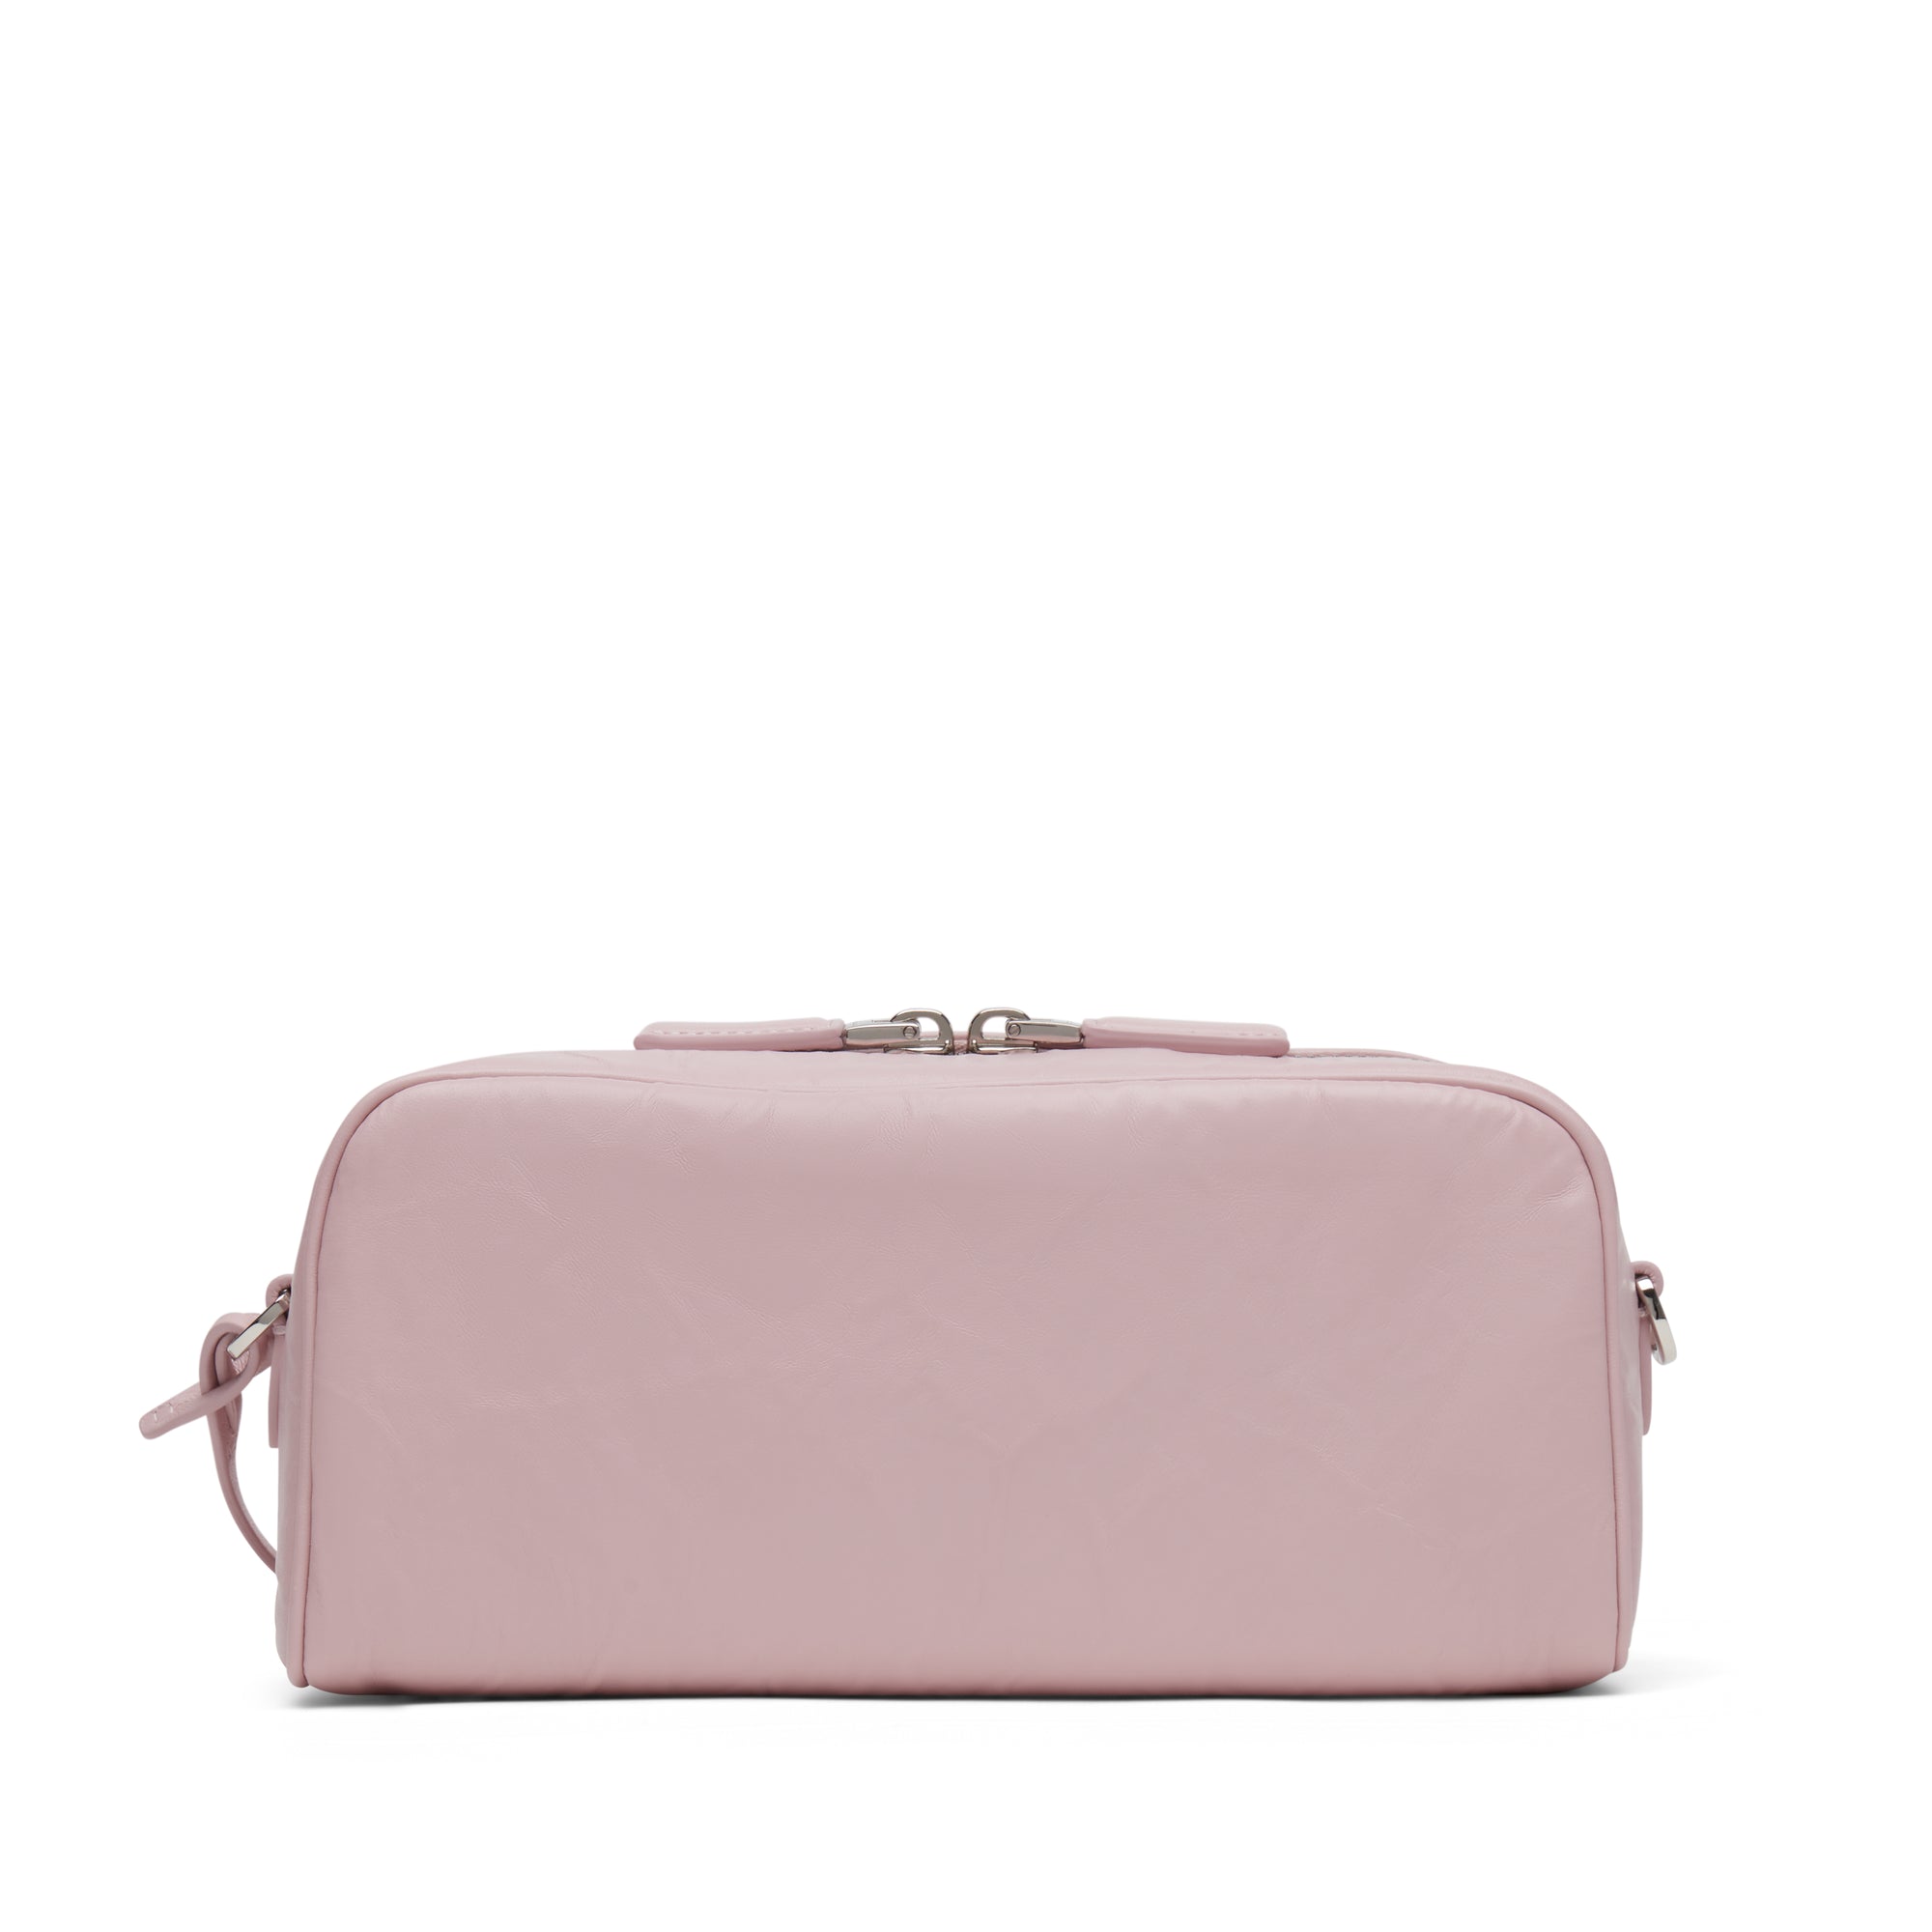 Prada - Women’s Multi Pocket Handbag - (Alabaster Pink) view 3